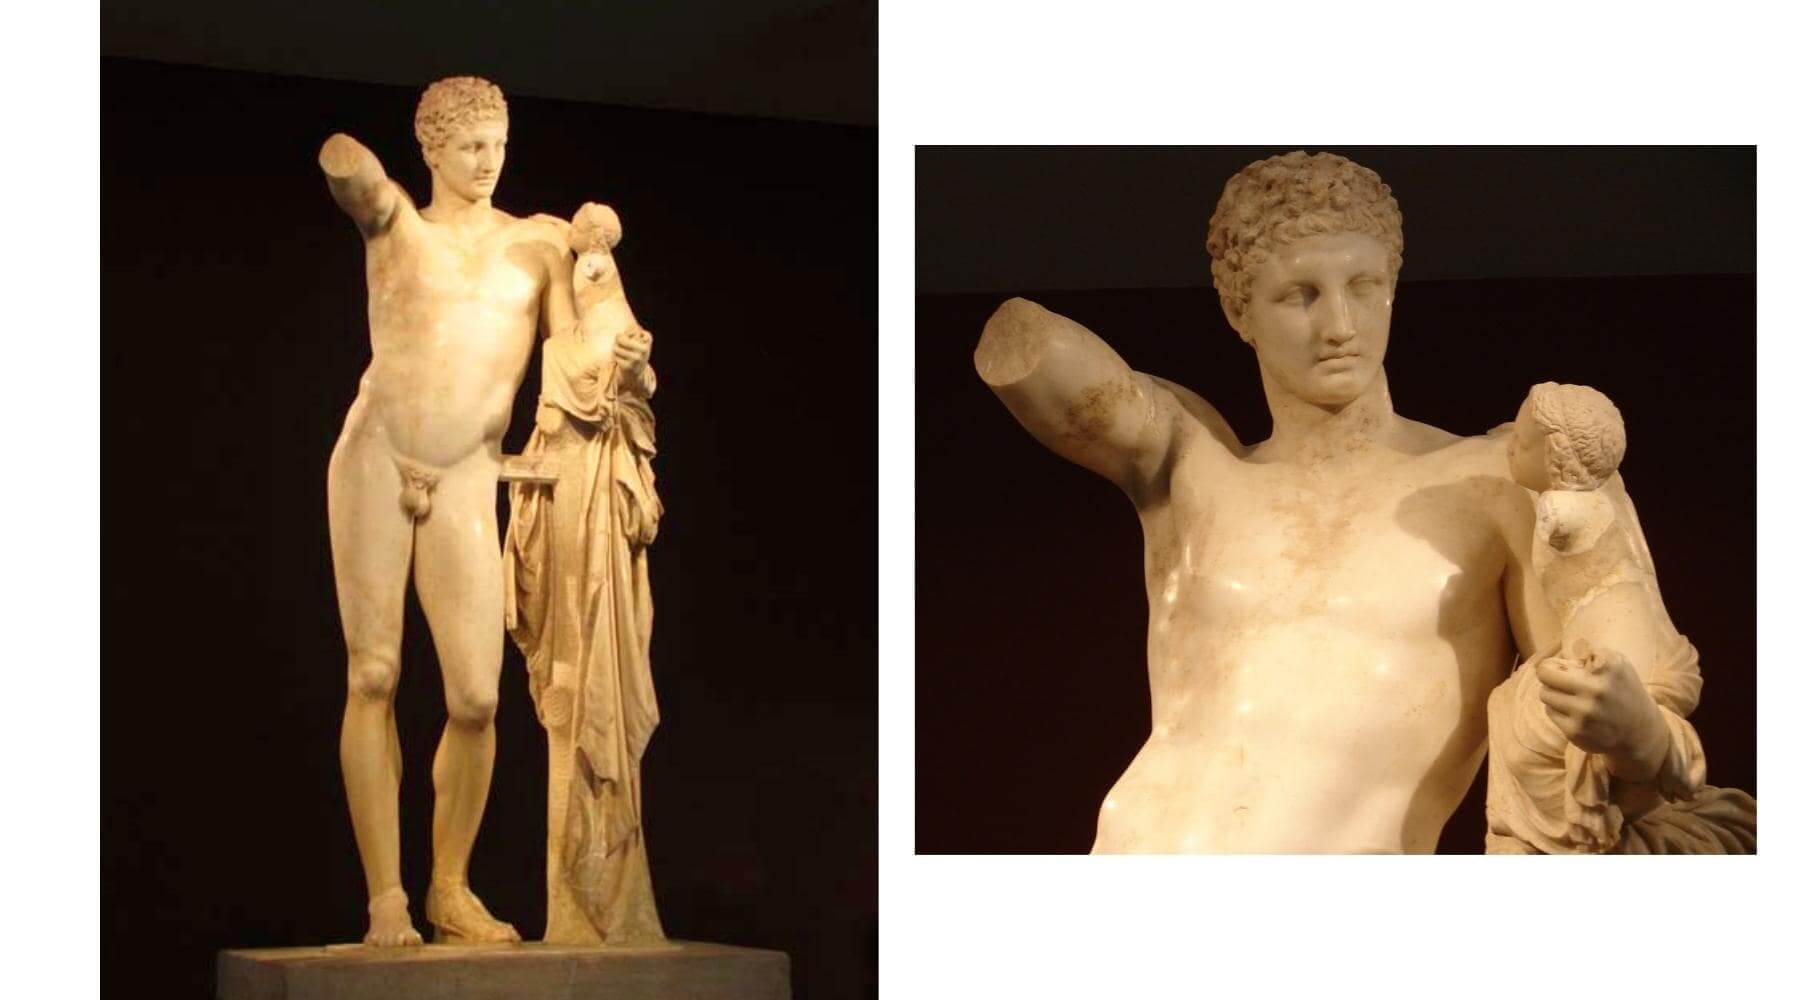 Hermes Praxiteles Greek statue in Olympia museum in Greece